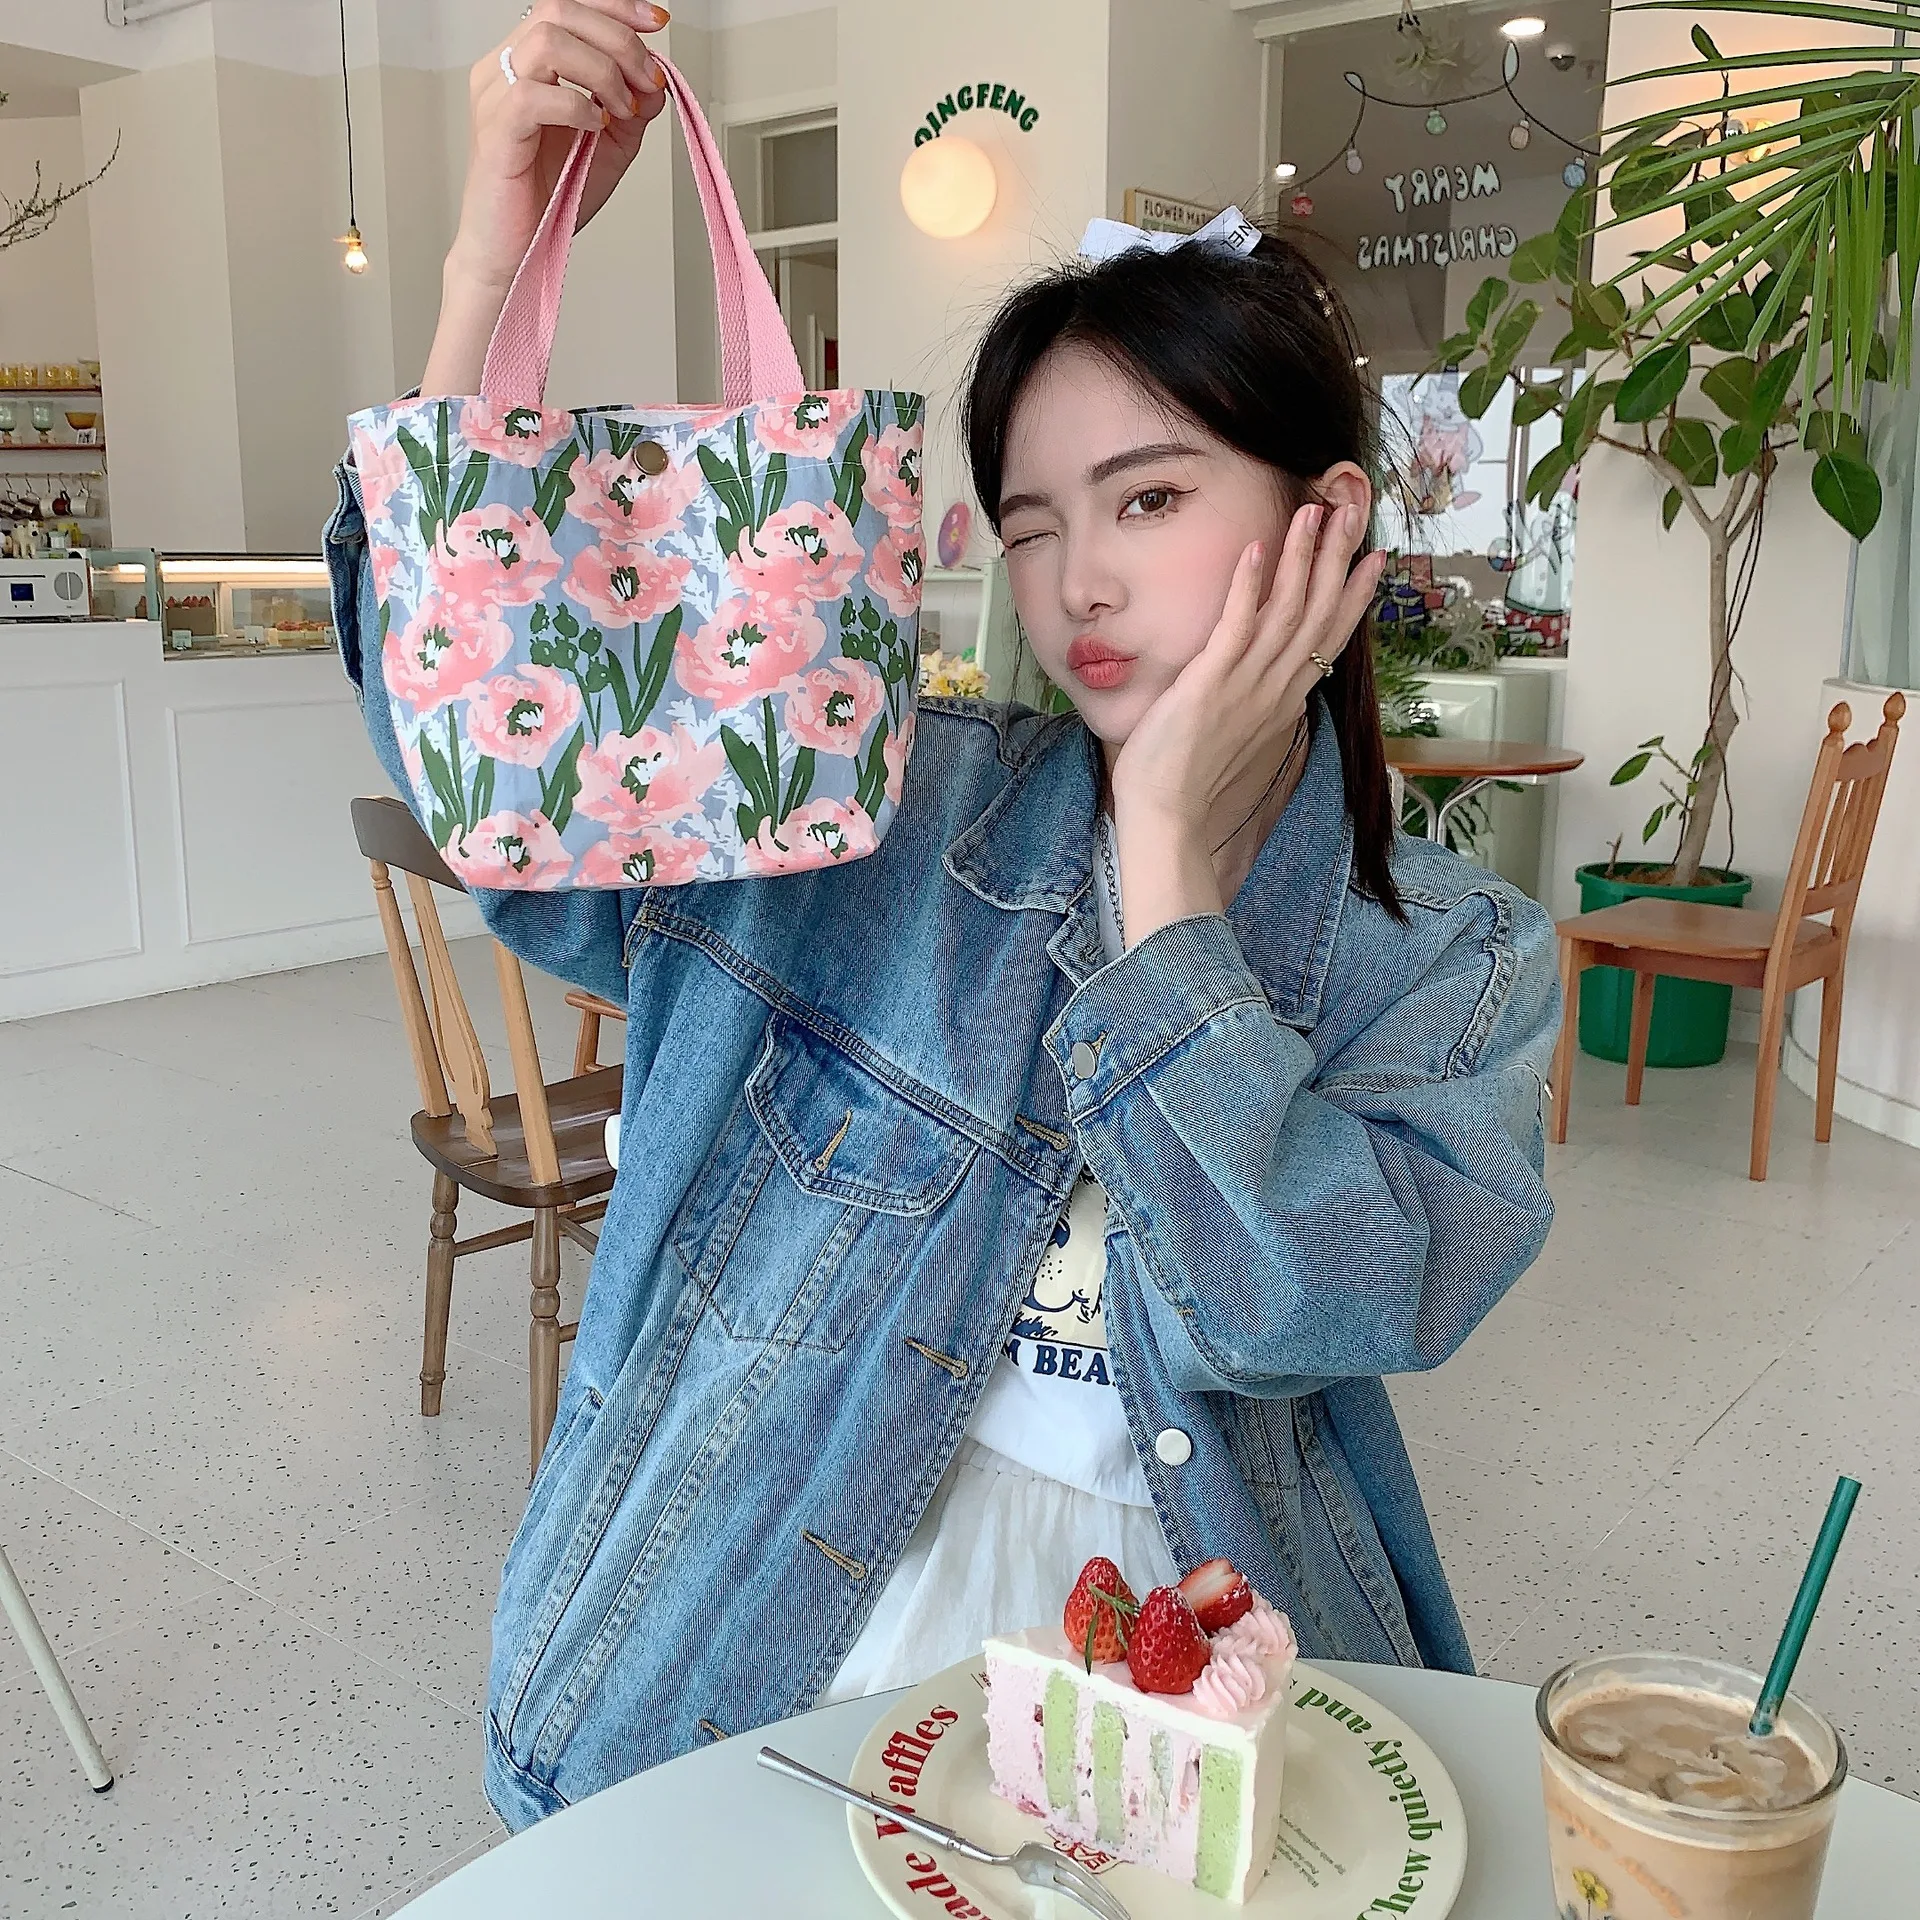 SuyuanArt Van Gogh - Paquete de 3 bolsas de mano estéticas reutilizables,  lona de lona para llevar al hombro, para mujer, trabajo, playa, viajes